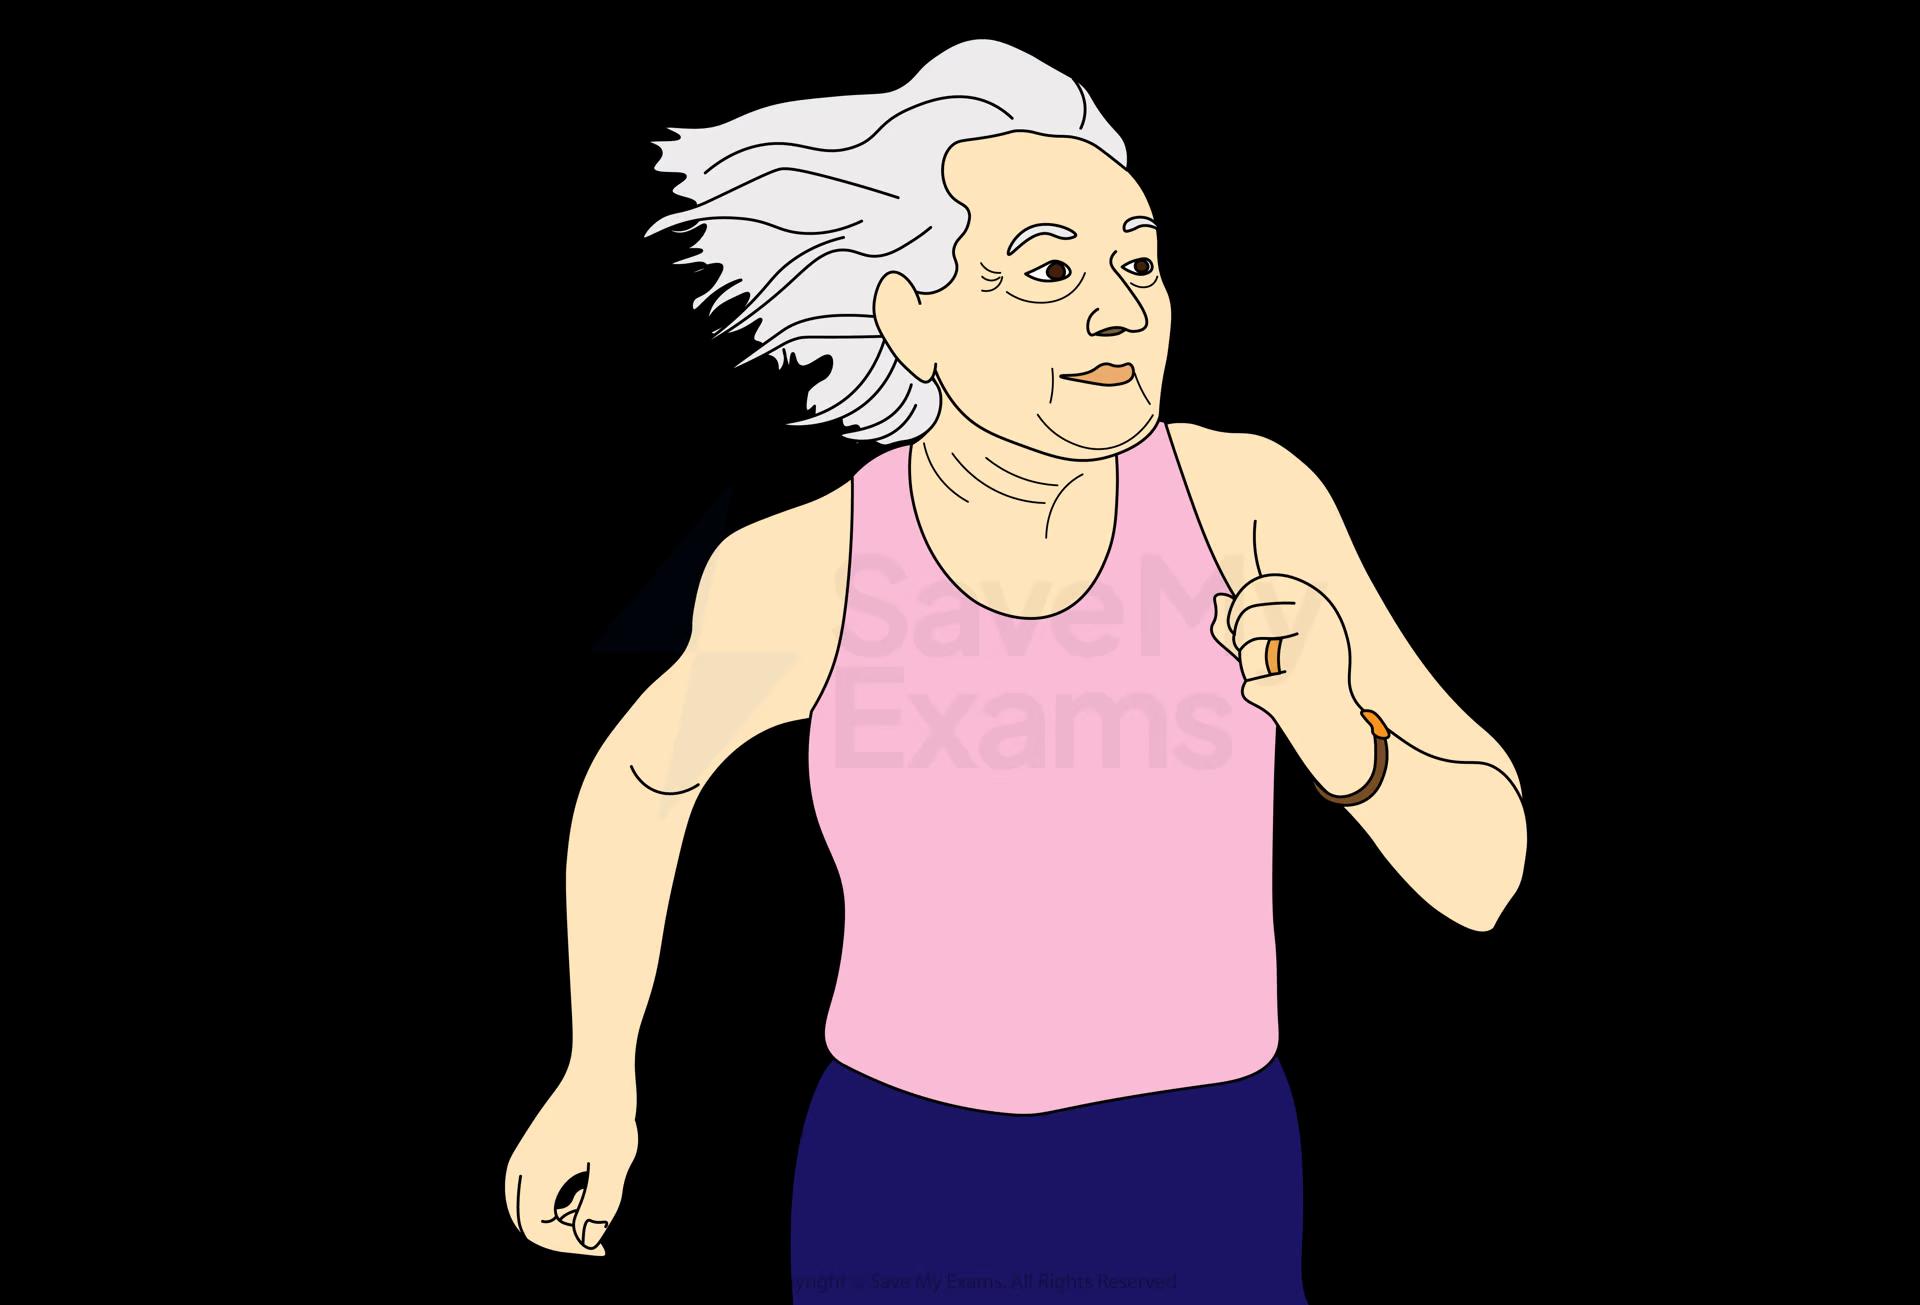 An elderly person running